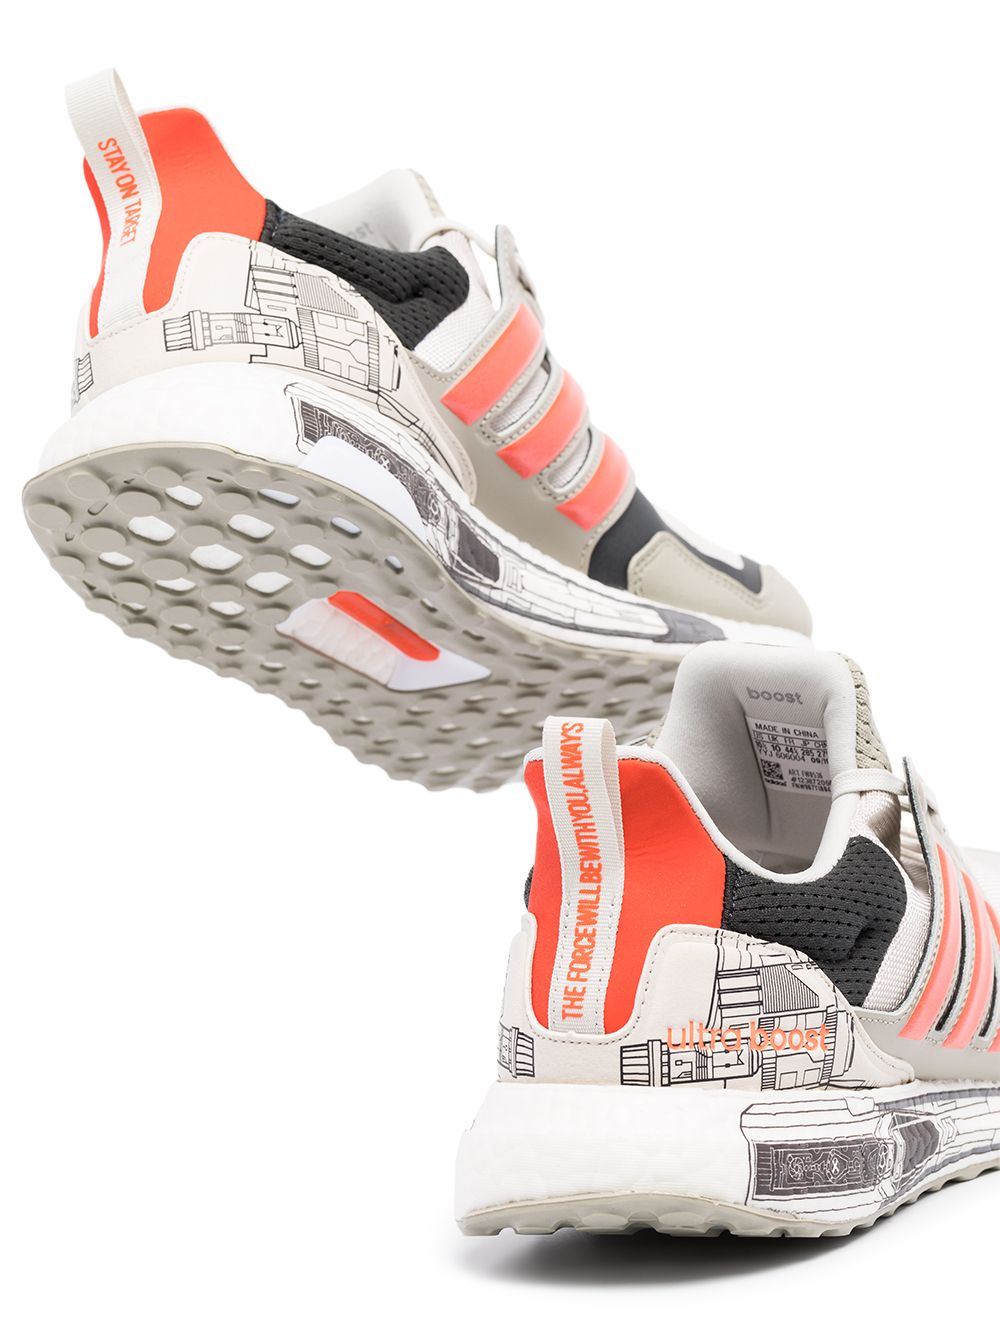 Adidas Star Wars Falcon Ultraboost Sneakers - Farfetch